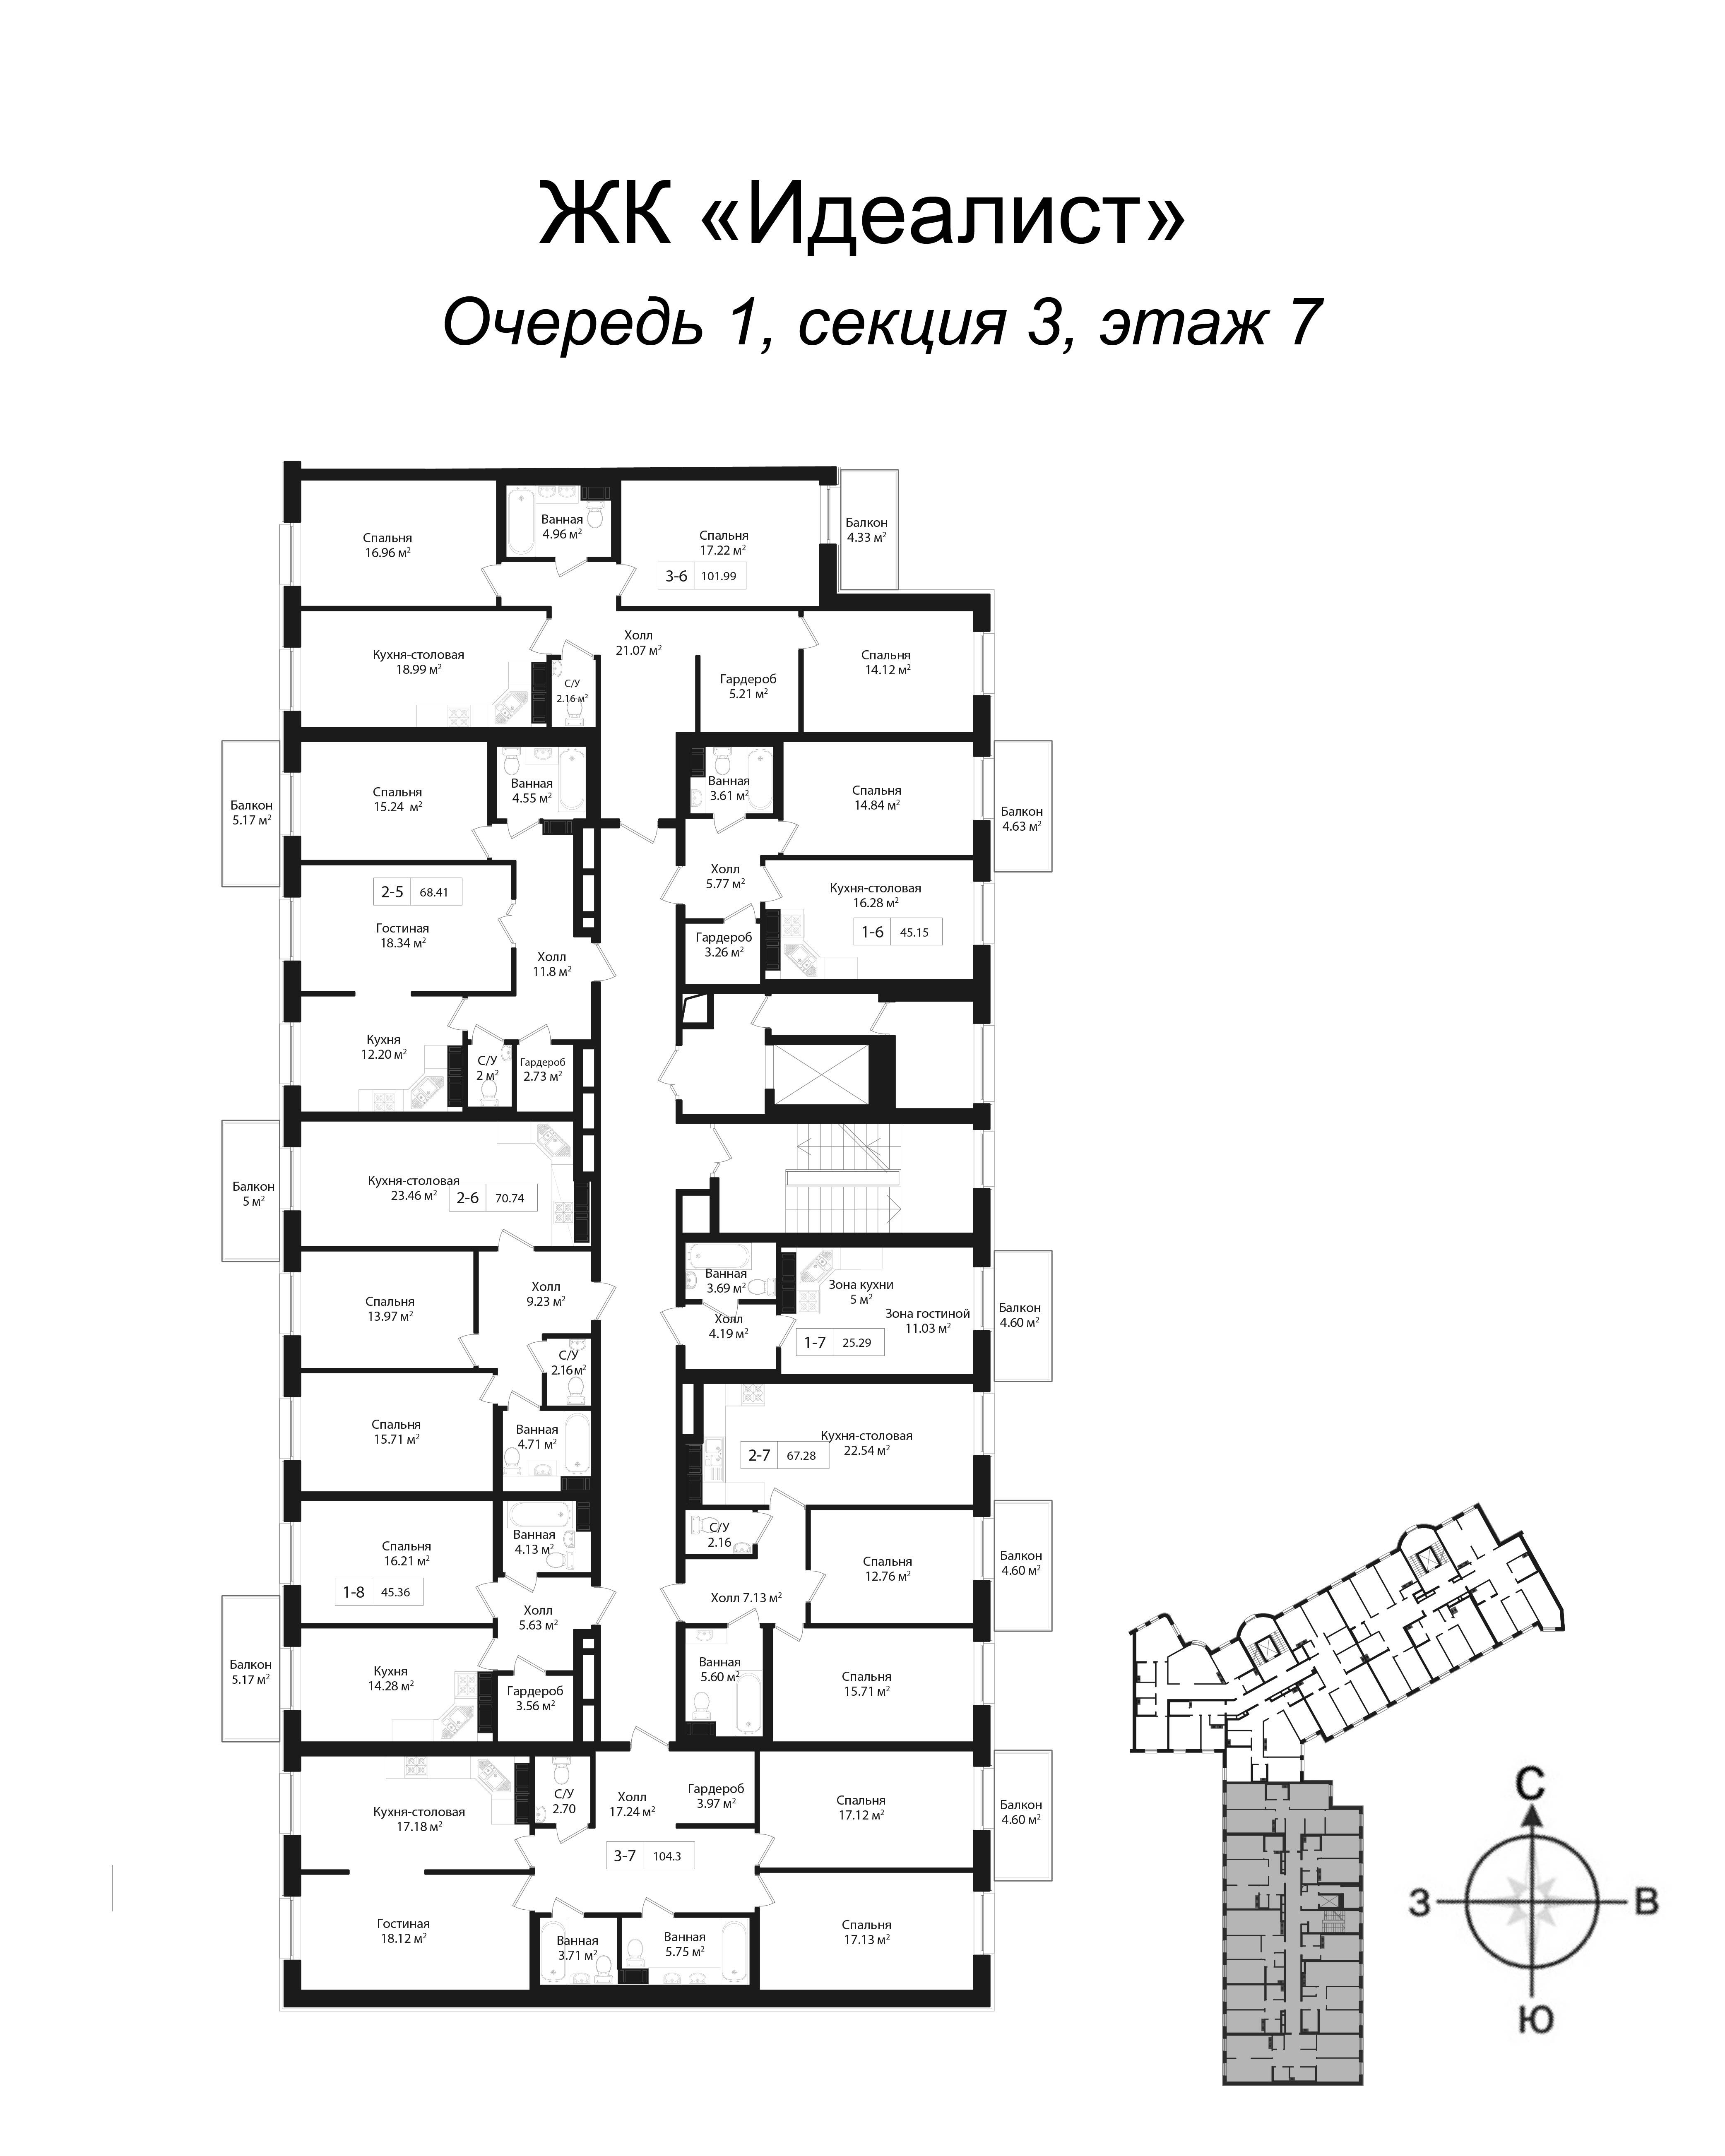 3-комнатная квартира, 102.1 м² в ЖК "Идеалист" - планировка этажа